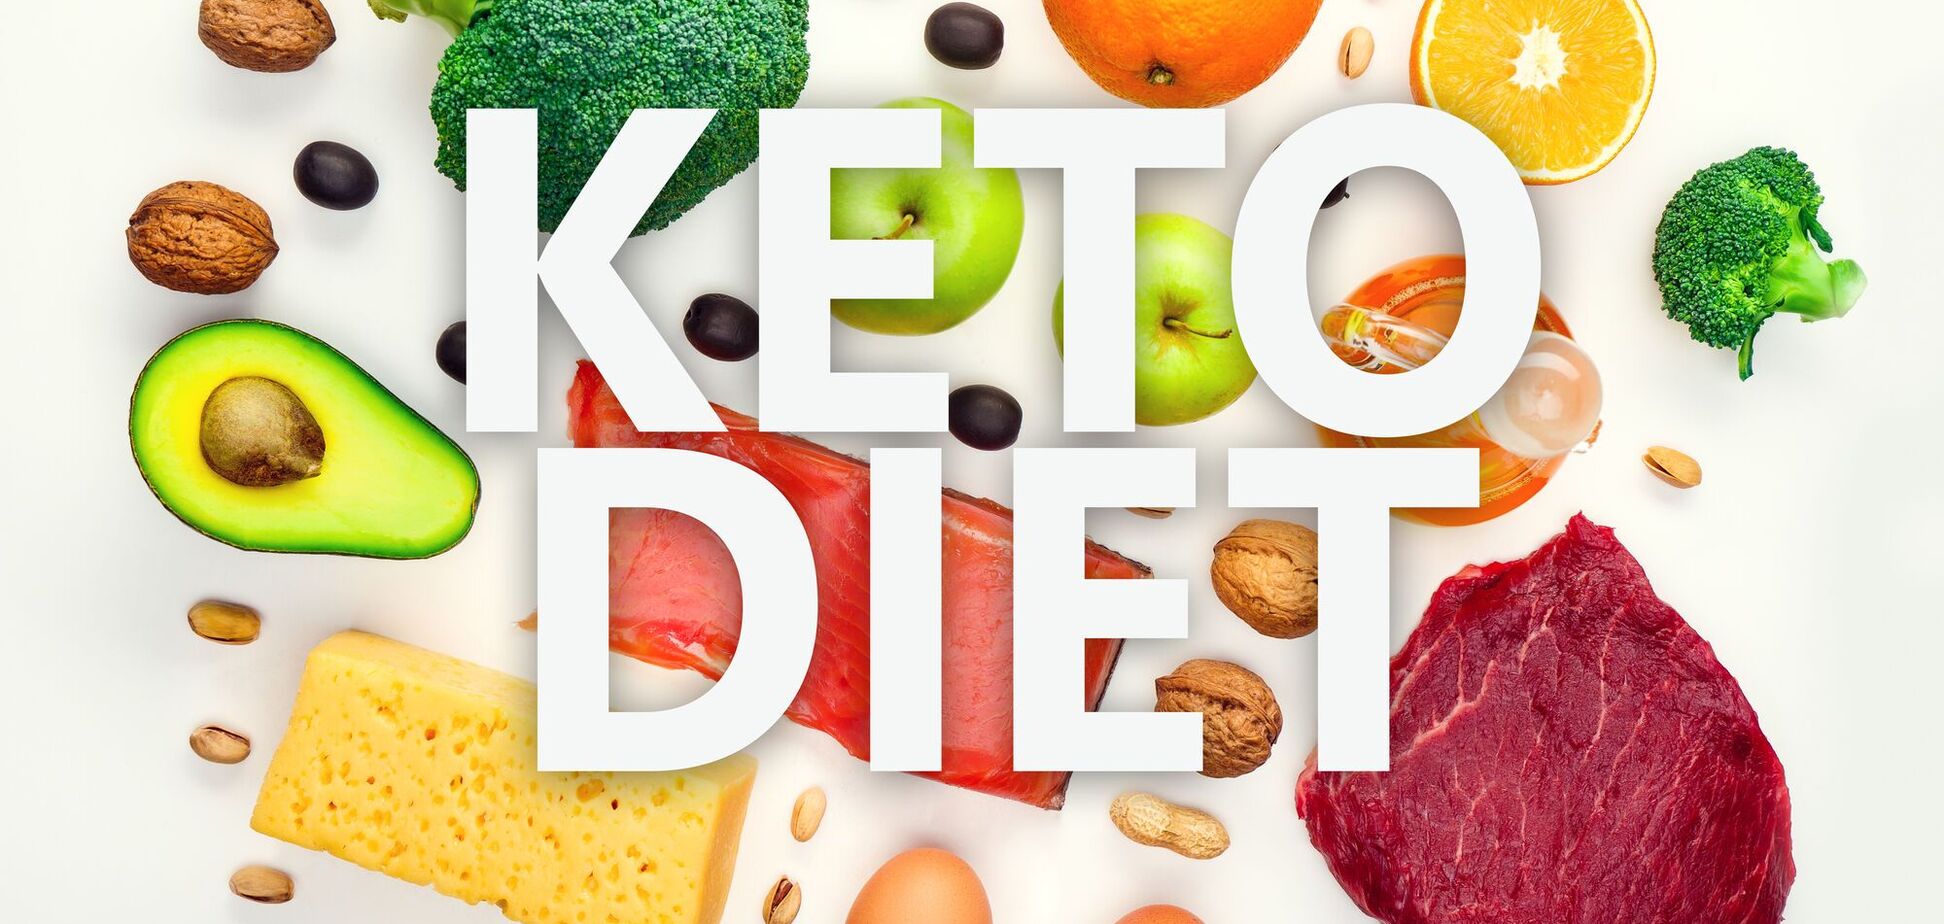 Кето-дієта при діабеті: вага та цукор під контролем 